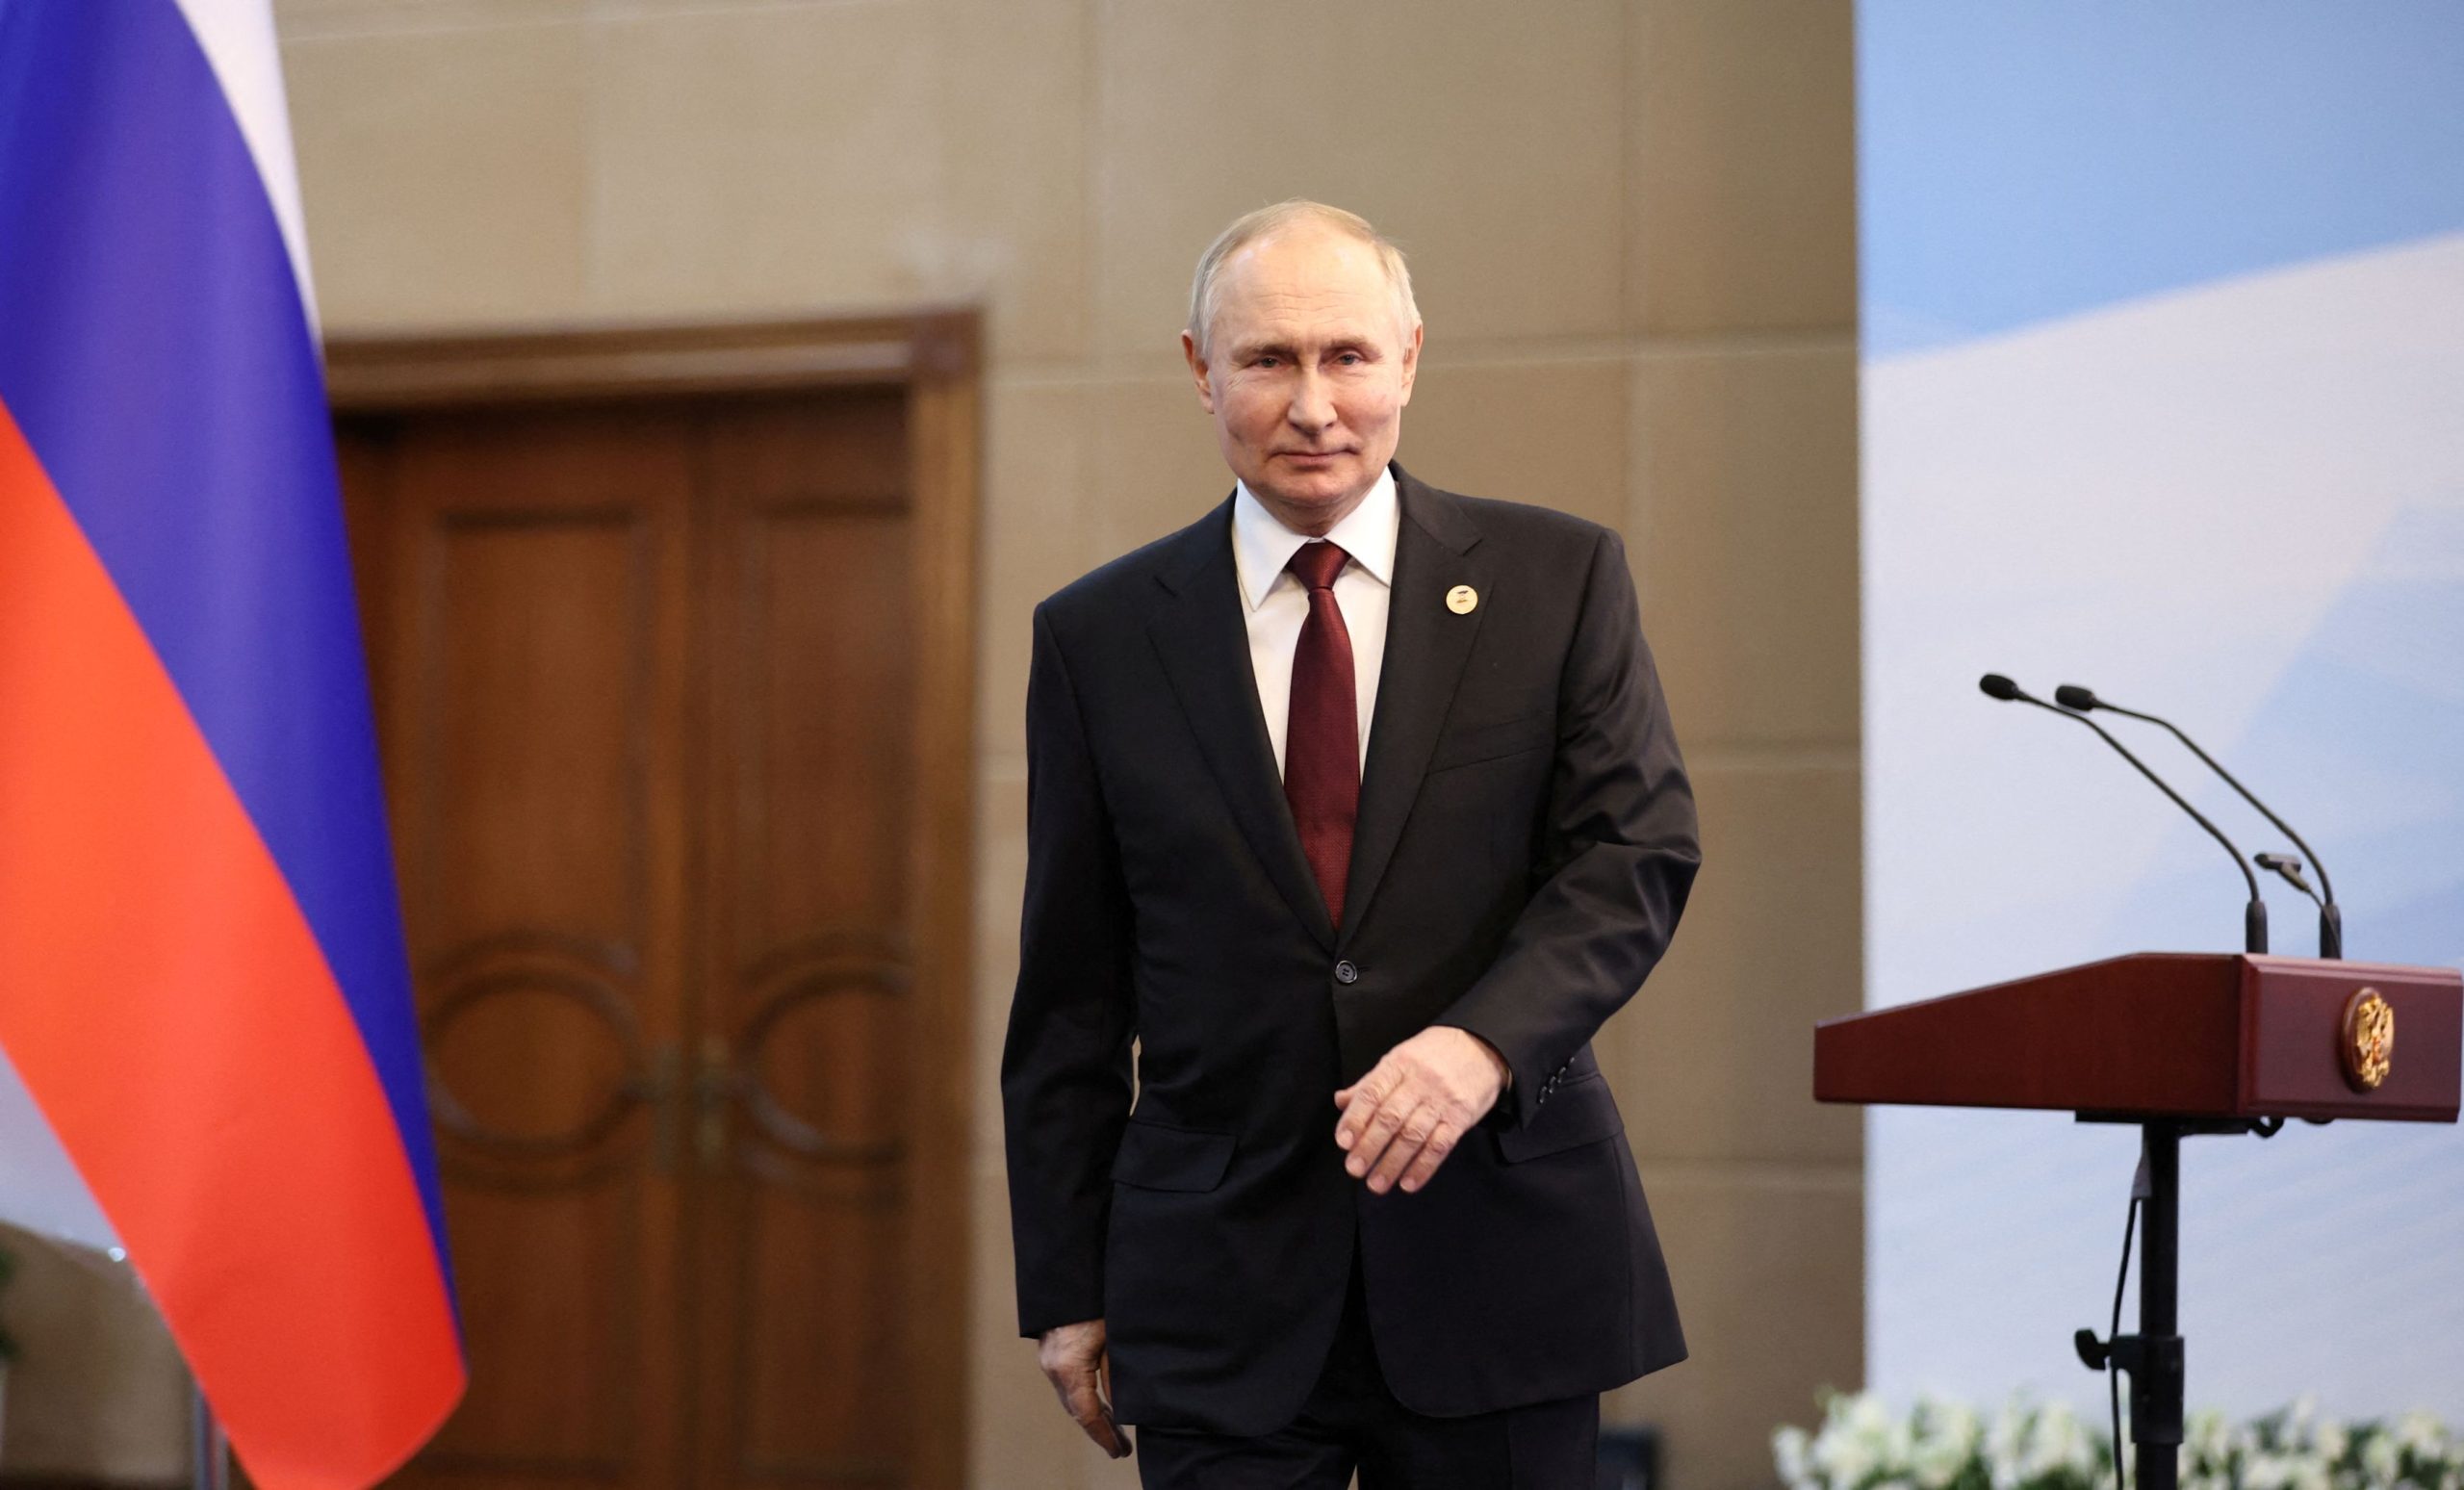 Β.Πούτιν: «Η μόνη άμυνα είναι η ενίσχυση των πυρηνικών μας»